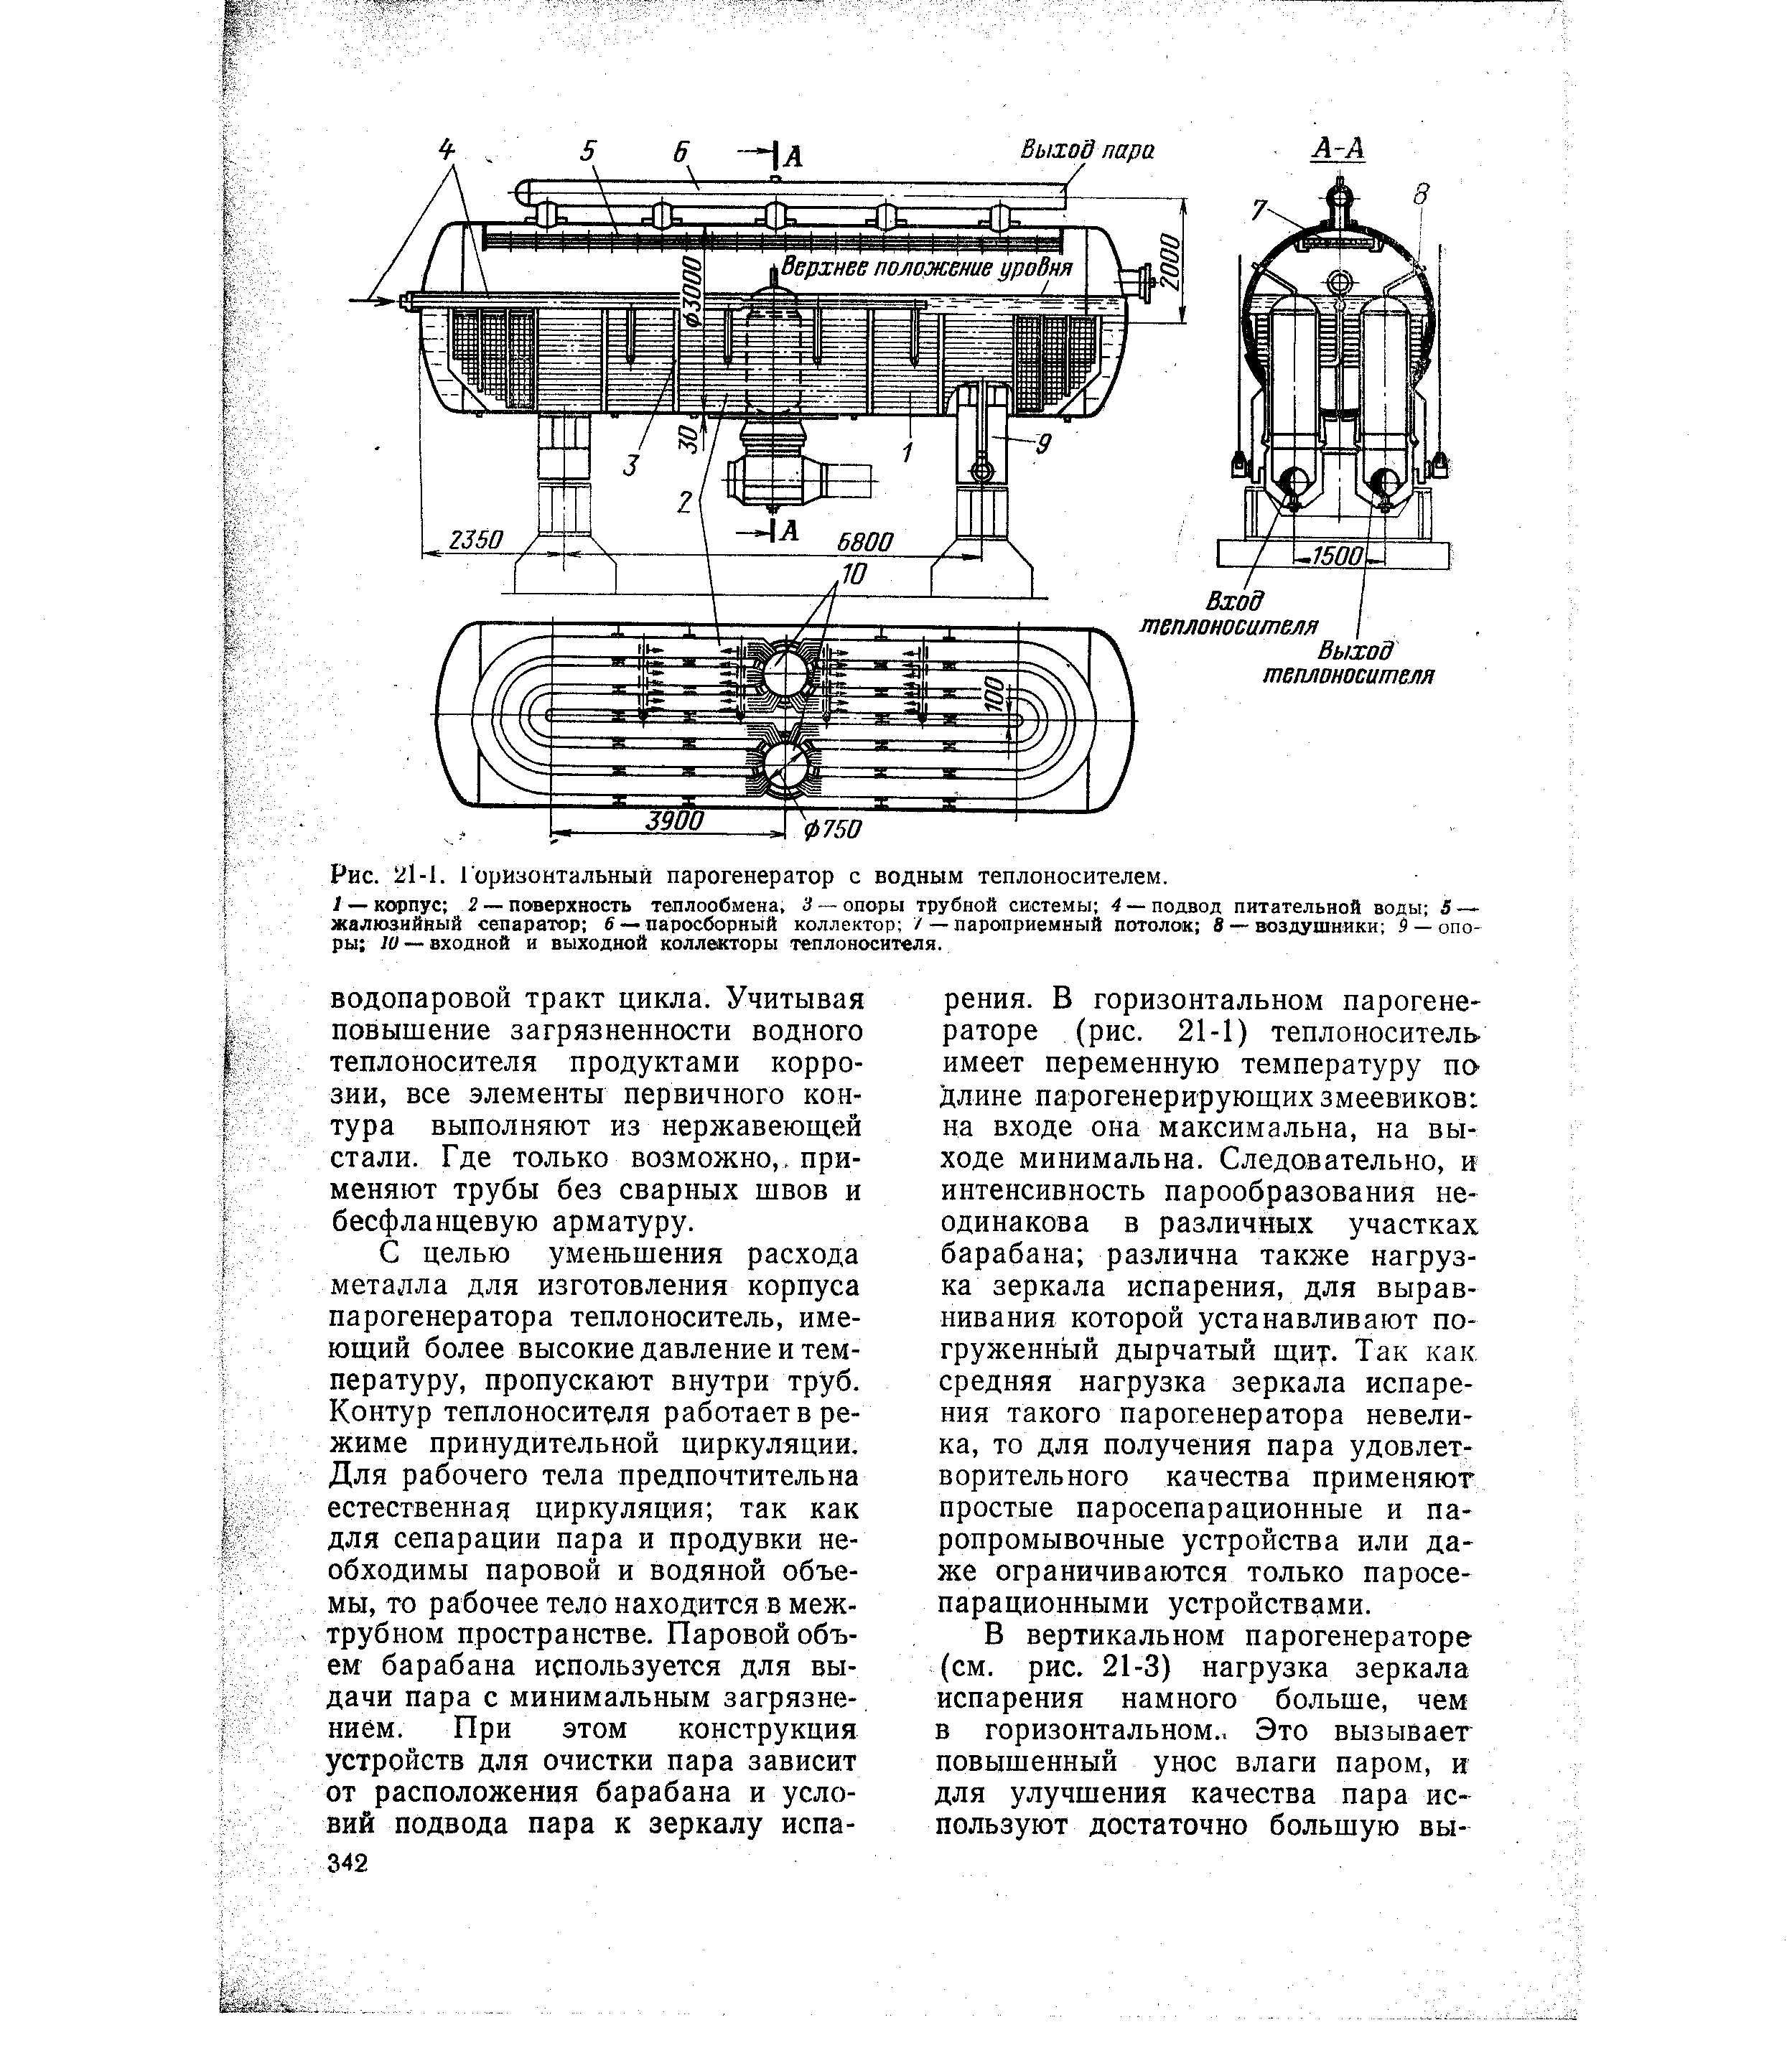 Рис. 21-1. Горизонтальный парогенератор с водным теплоносителем.
